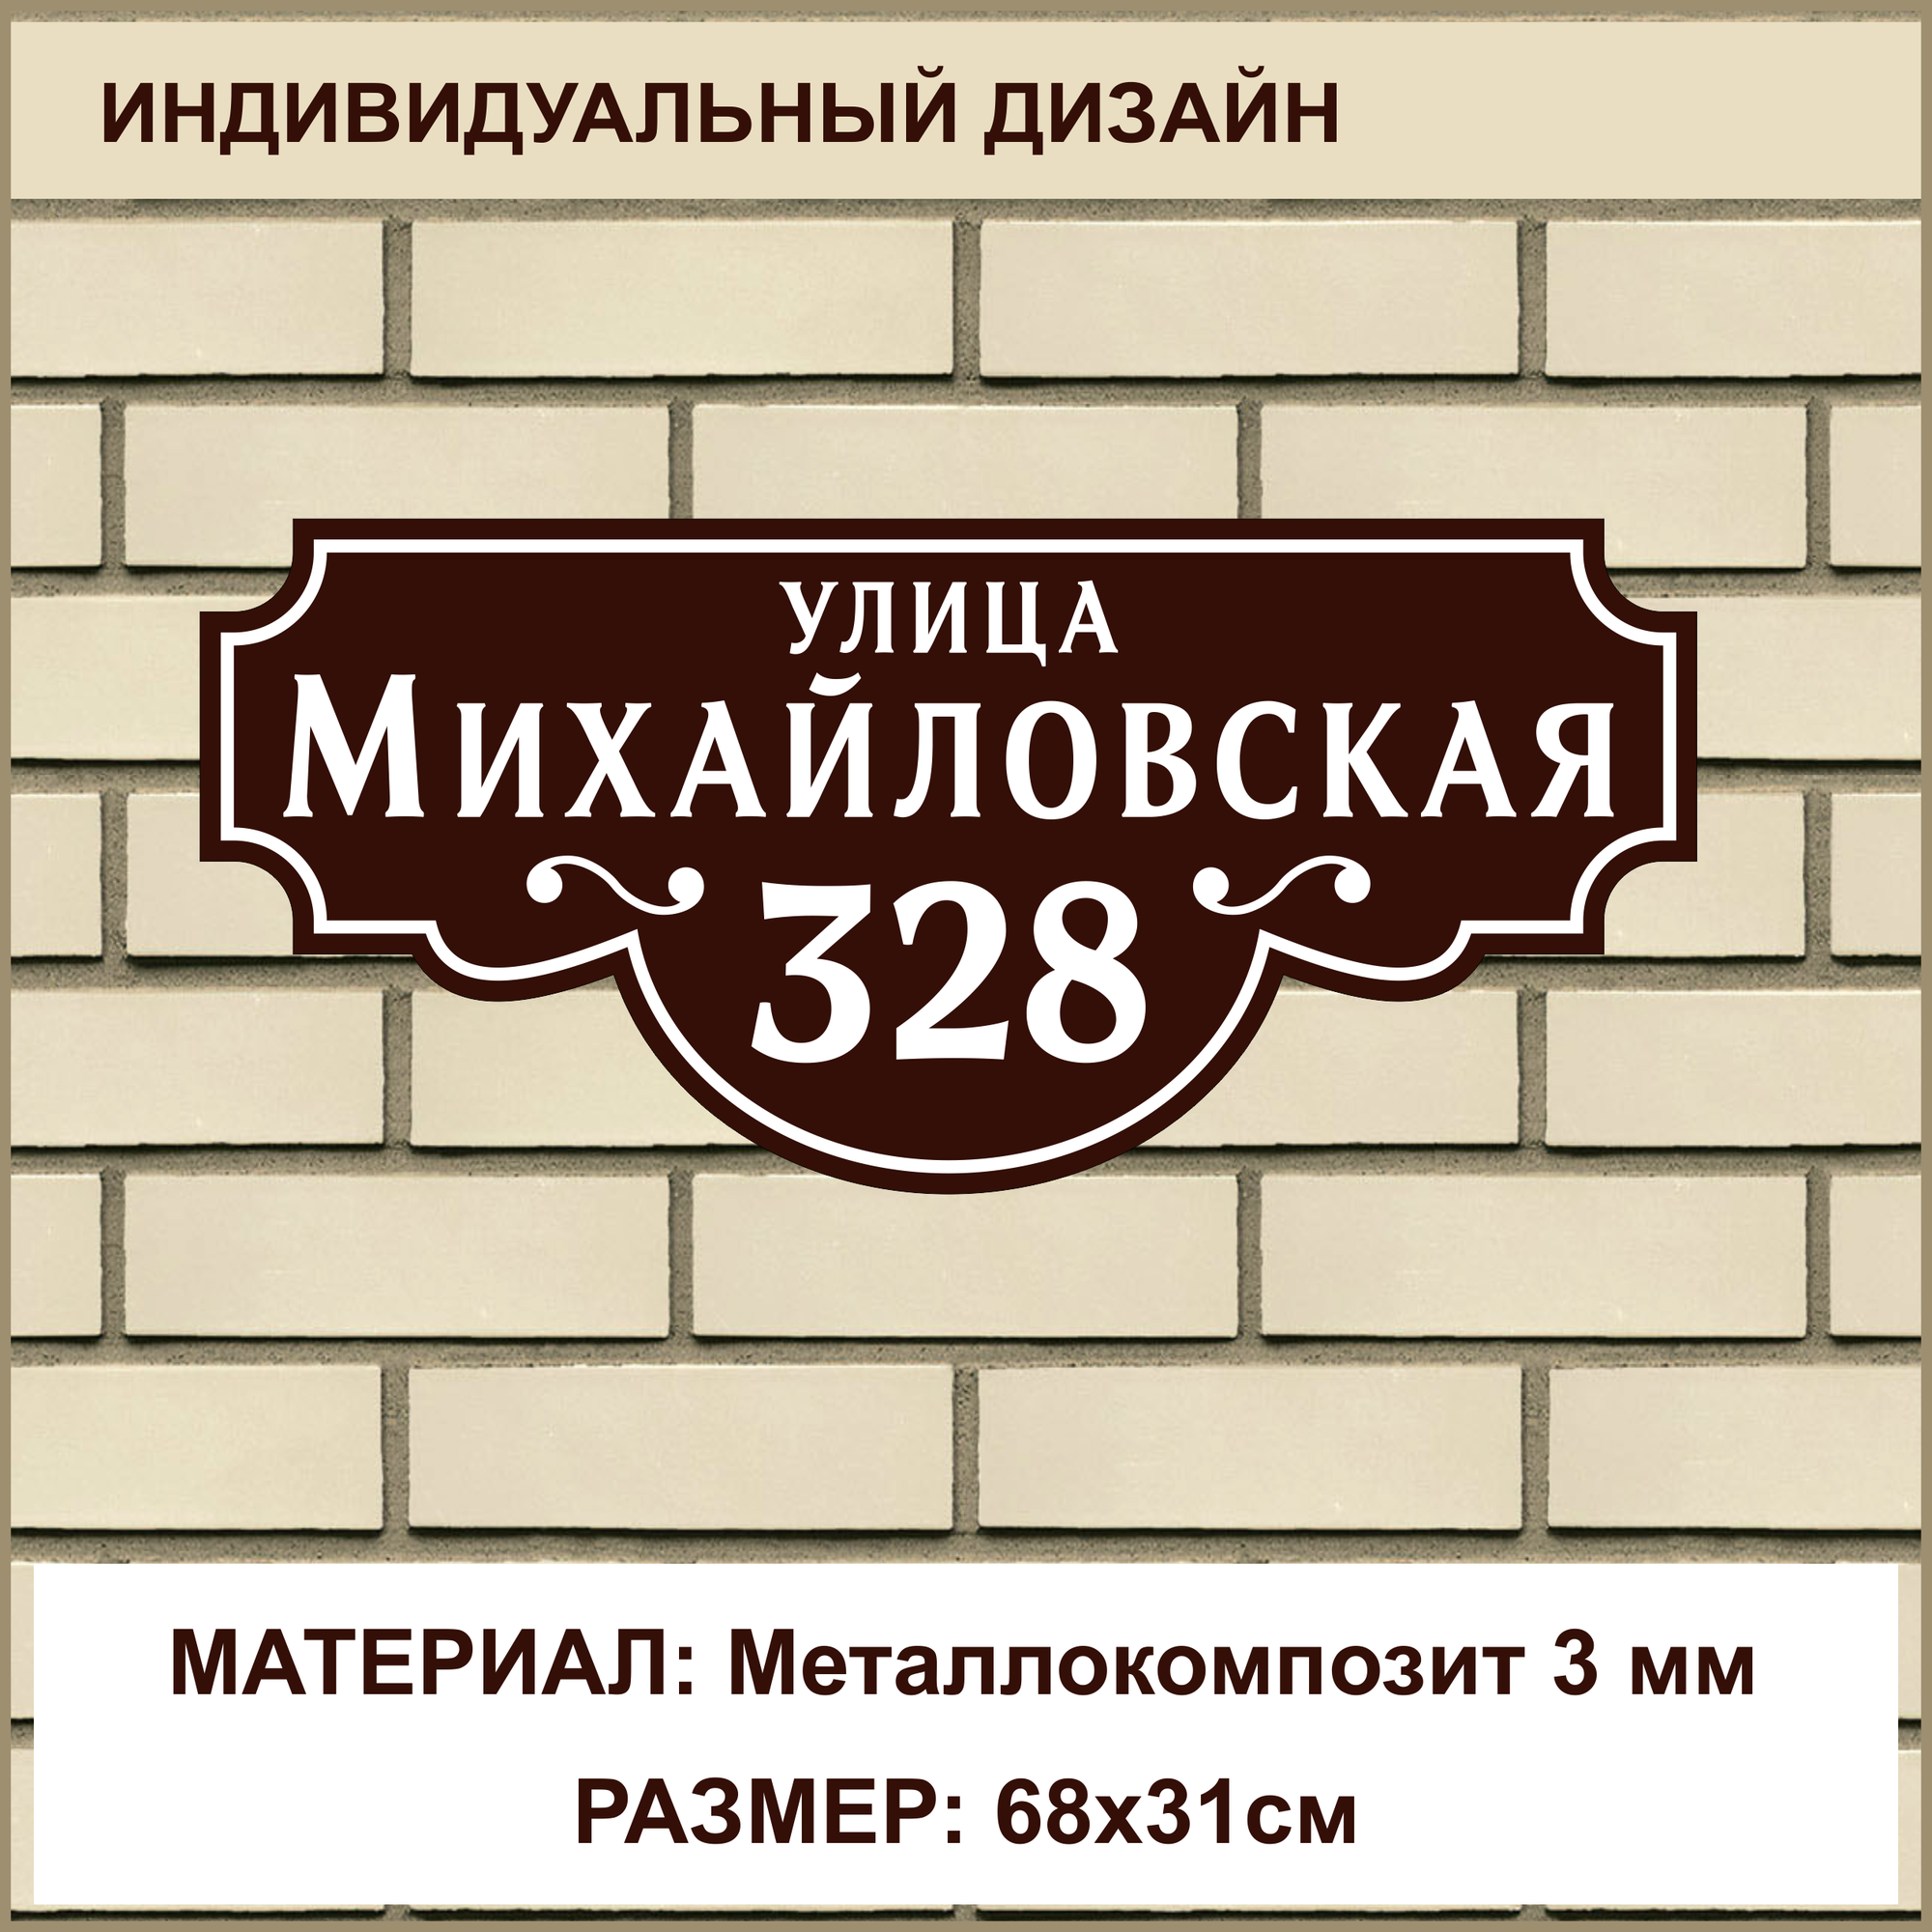 Адресная табличка на дом из Металлокомпозита толщиной 3 мм / 68x31см / коричневый